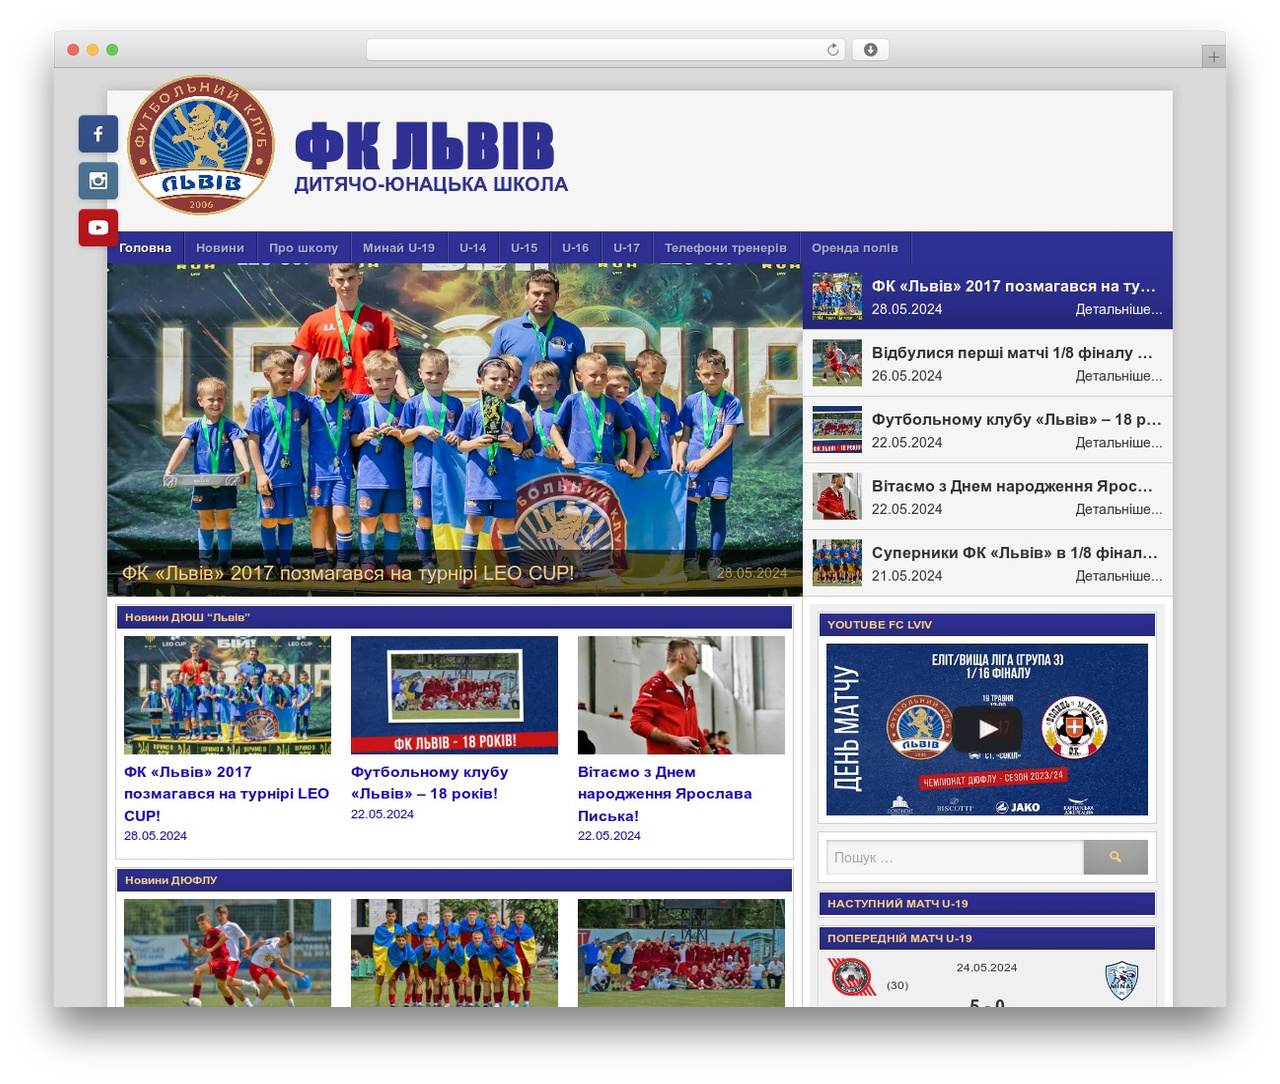 Premier - Premium WordPress Theme for Football Clubs - ThemeBoy